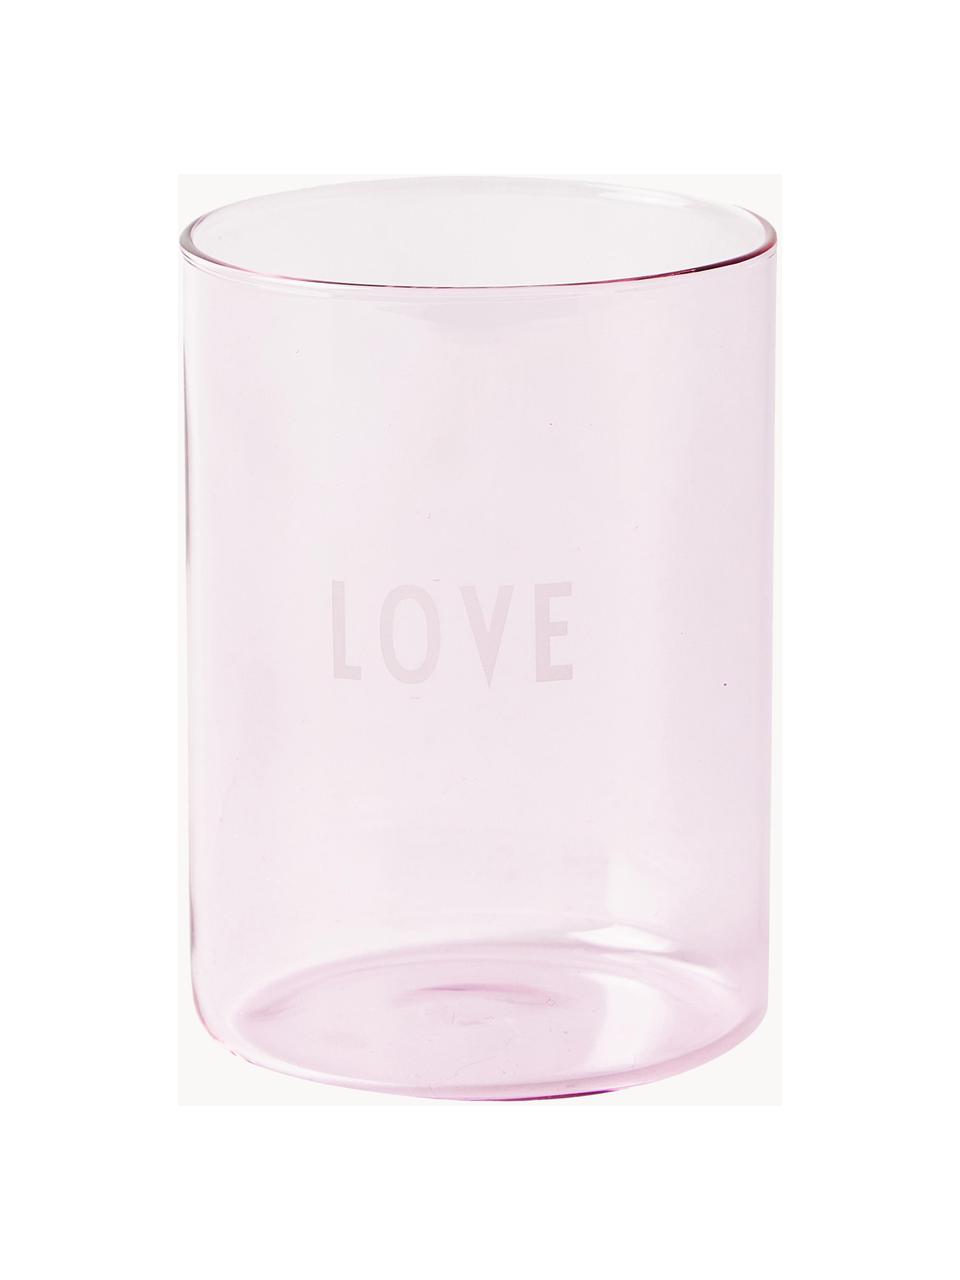 Designová sklenice s nápisem LOVE, Borosilikátové sklo

Objevte všestrannost borosilikátového skla pro Vaši domácnost! Borosilikátové sklo je vysoce kvalitní, spolehlivý a odolný materiál. Vyznačuje se výjimečnou tepelnou odolností, a proto je ideální pro Váš horký čaj nebo kávu. Ve srovnání s běžným sklem je borosilikátové sklo odolnější proti rozbití a prasknutí, takže je bezpečným společníkem ve Vaší domácnosti., Světle růžová (Love), Ø 8 x V 11 cm, 350 ml